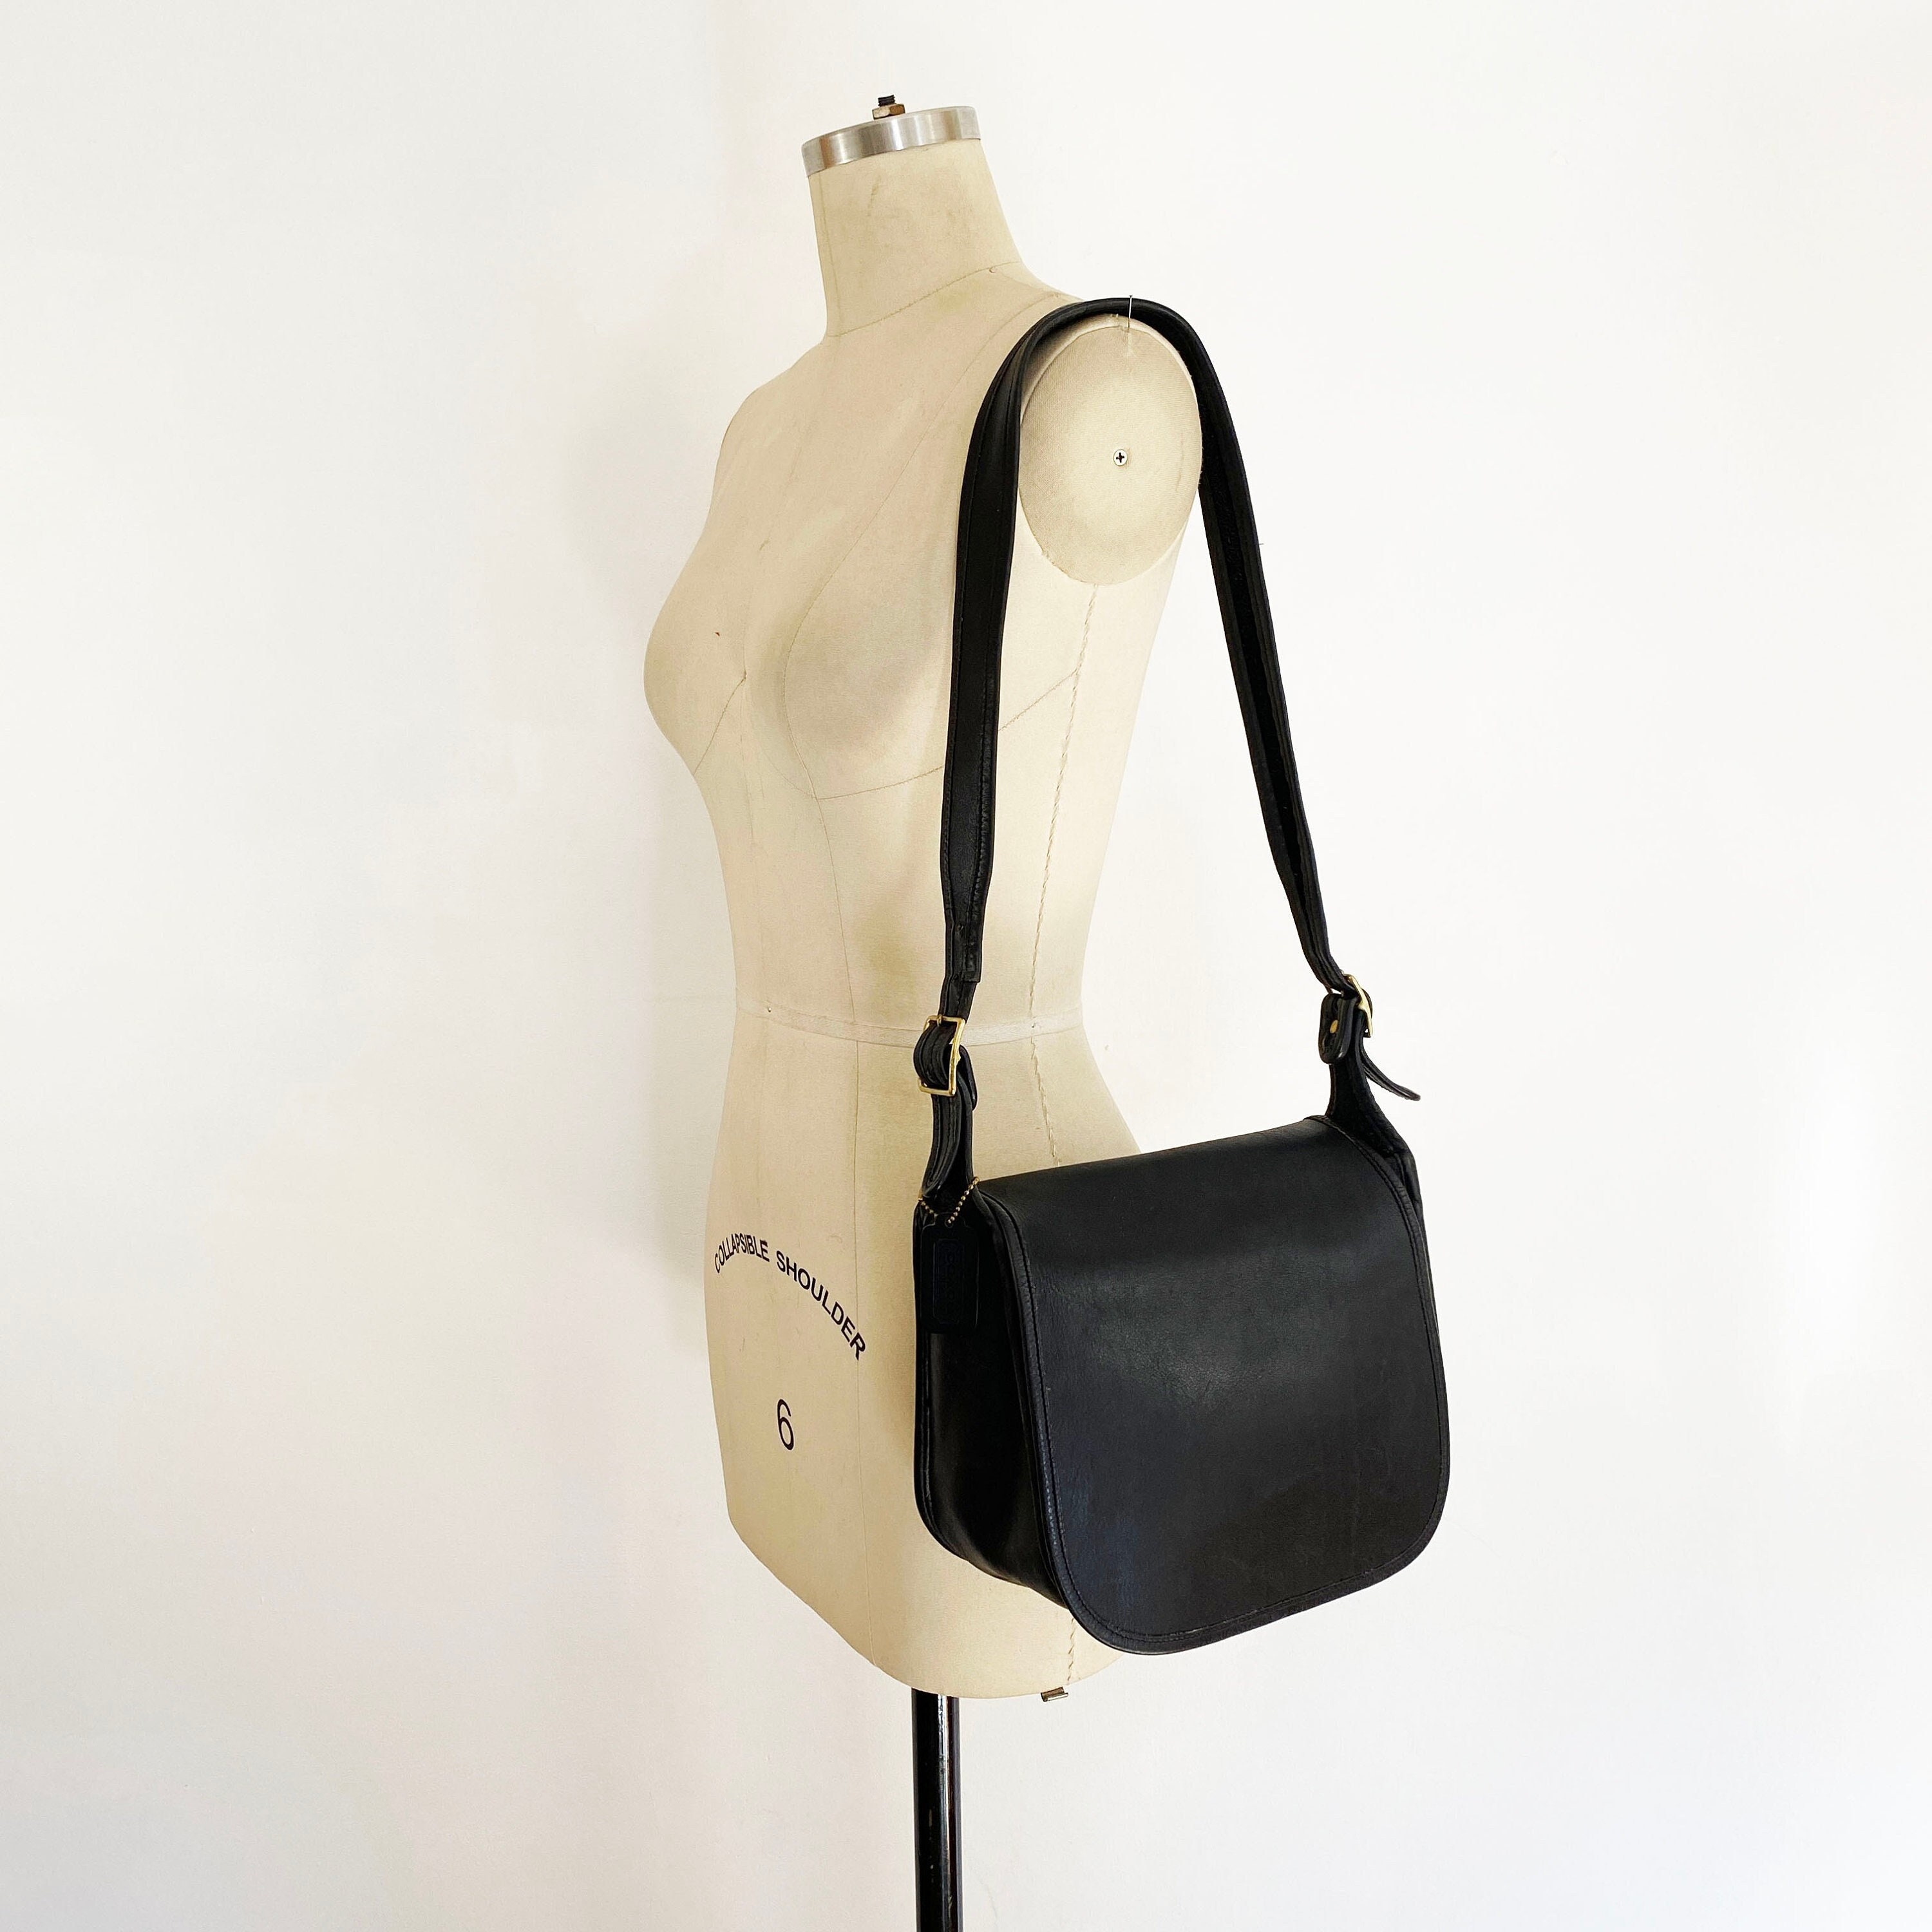 Vintage Coach Black Leather Buckle Bag Refurbished Black 